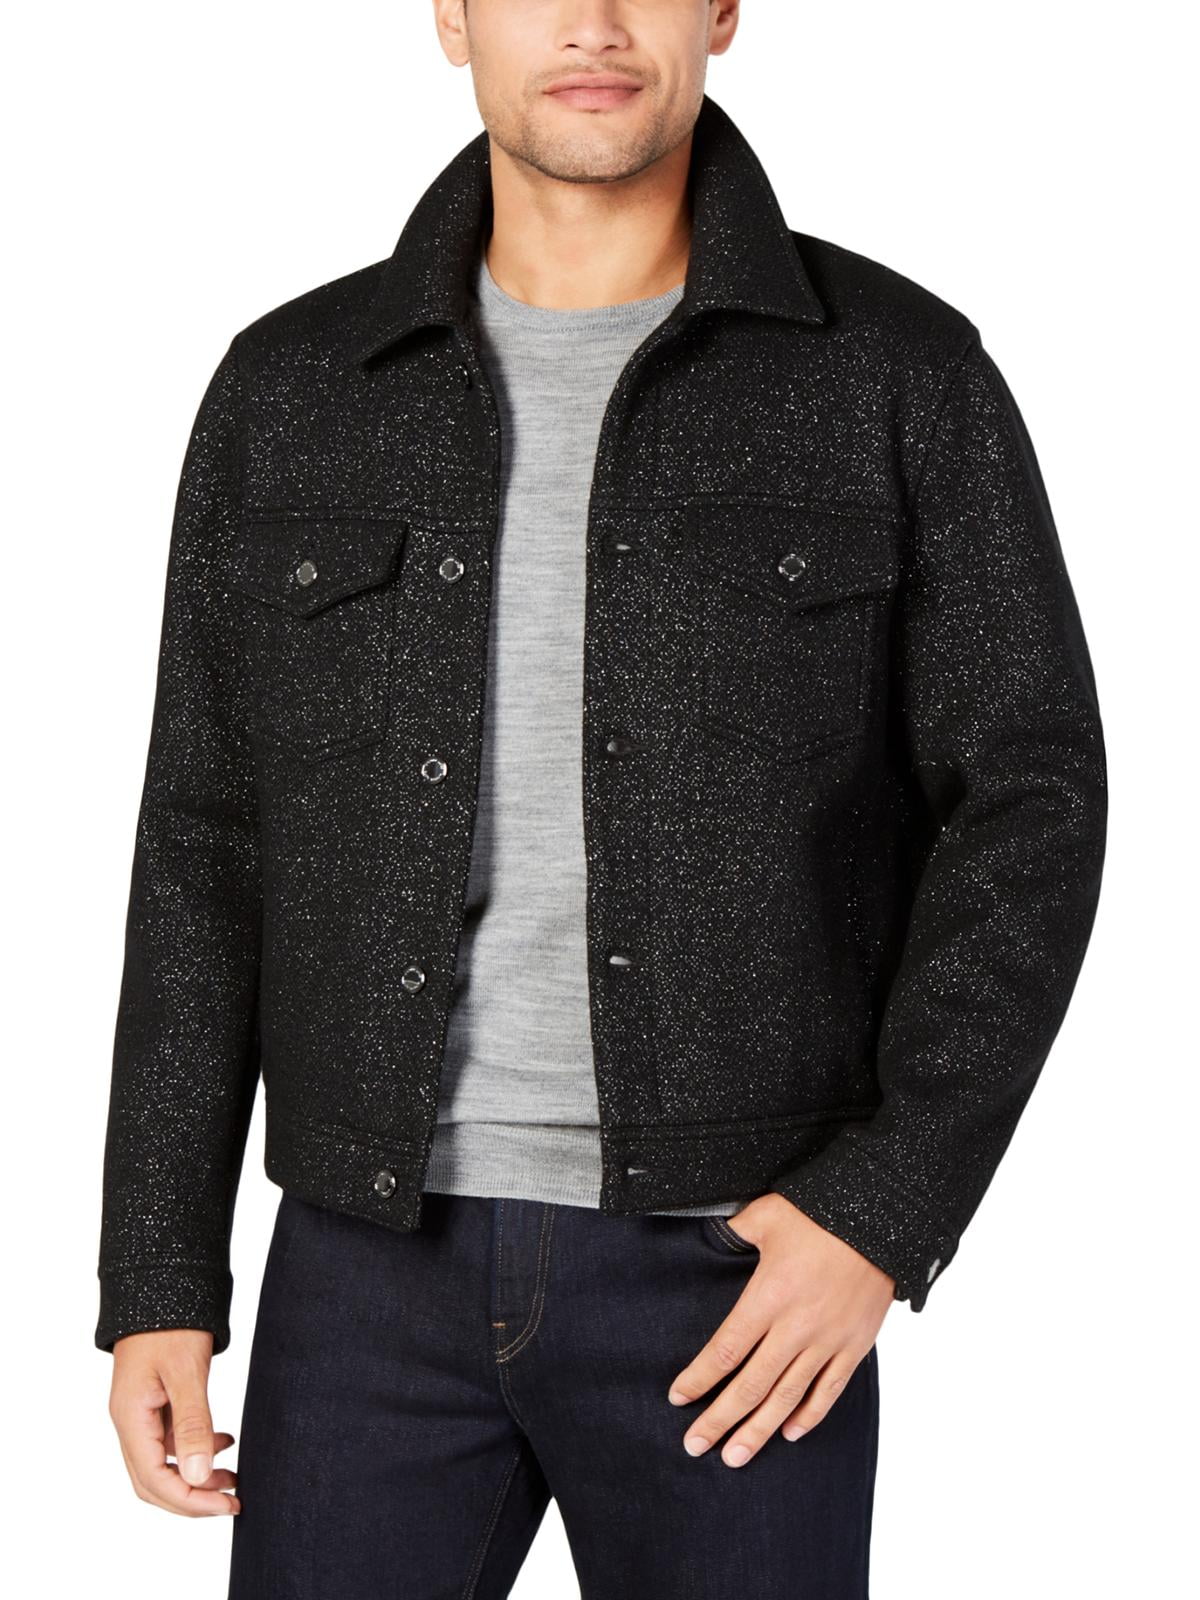 Michael Kors - Michael Kors Mens Winter Wool Coat Black XL - Walmart.com